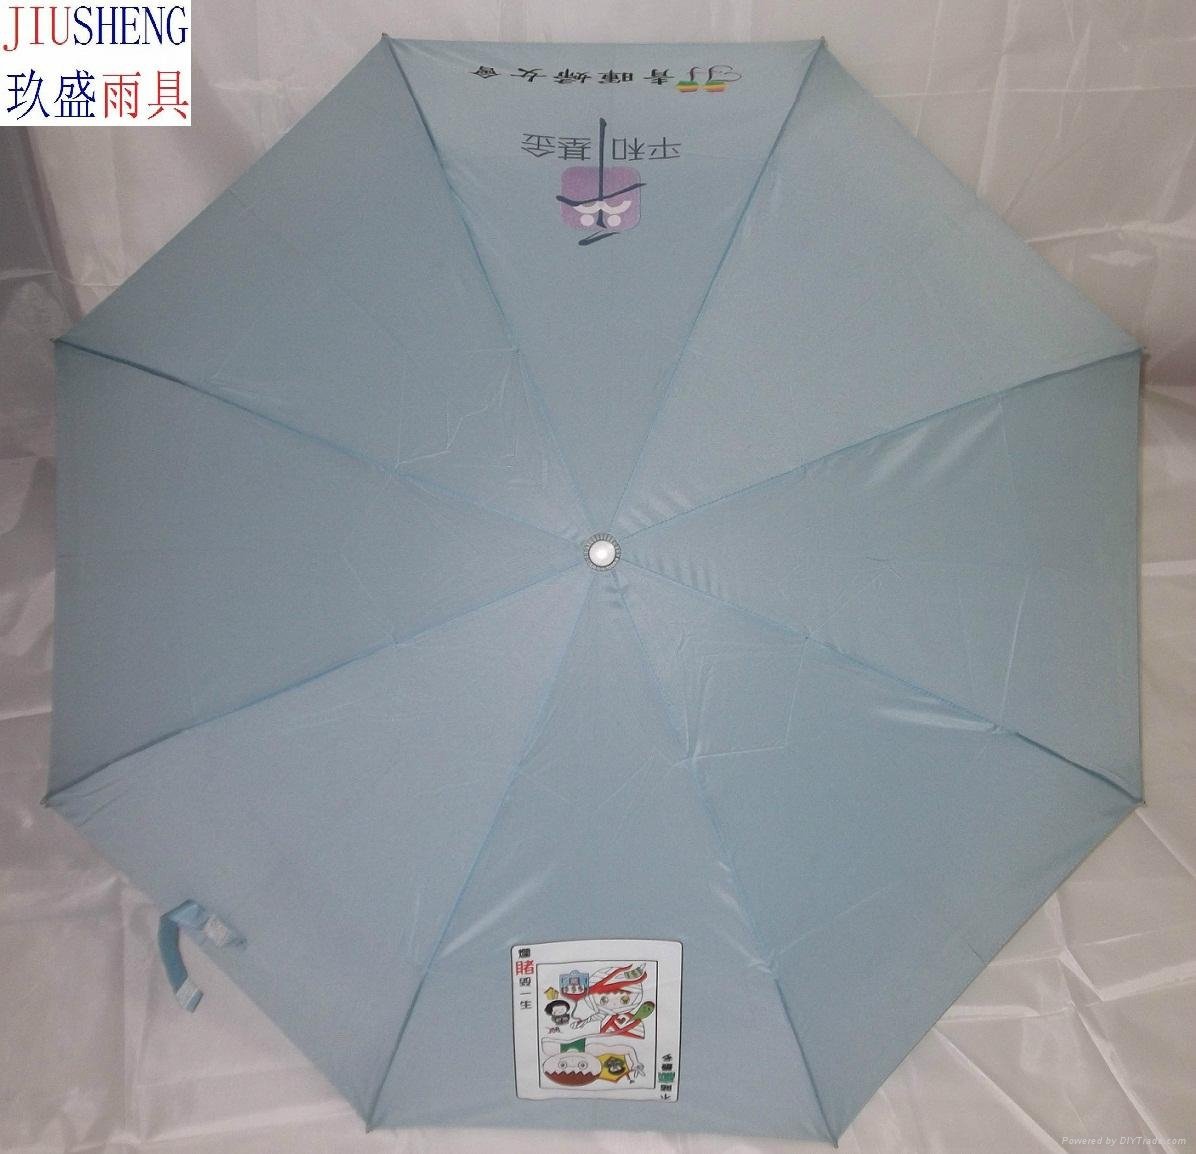 umbrella 3